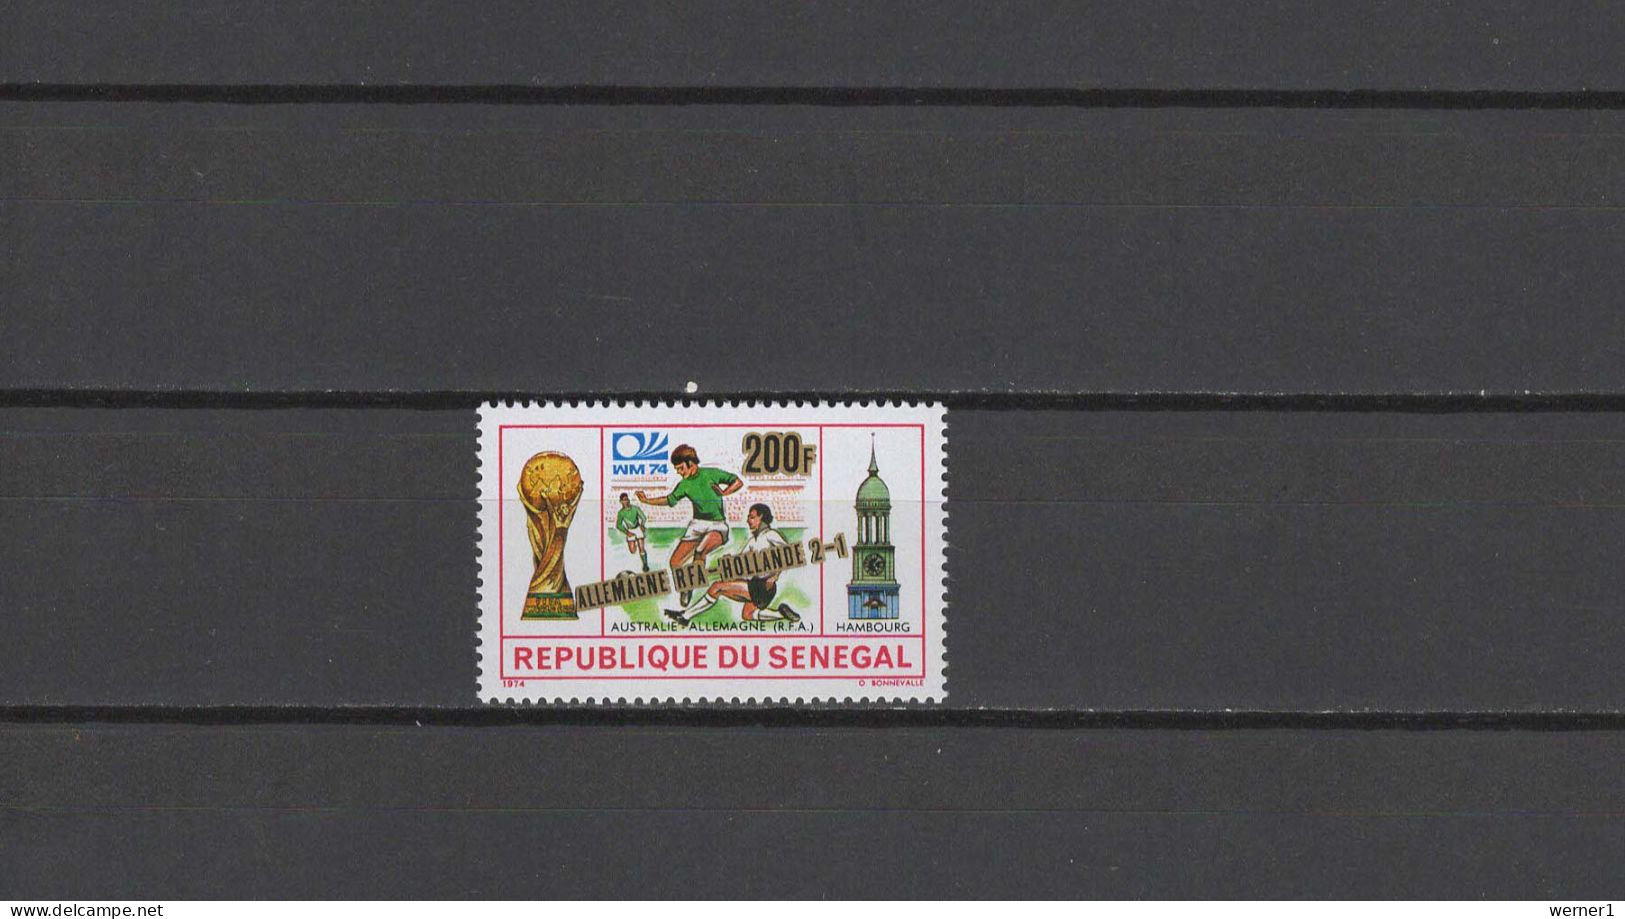 Senegal 1975 Football Soccer World Cup Stamp With Winner Overprint MNH - 1974 – Allemagne Fédérale